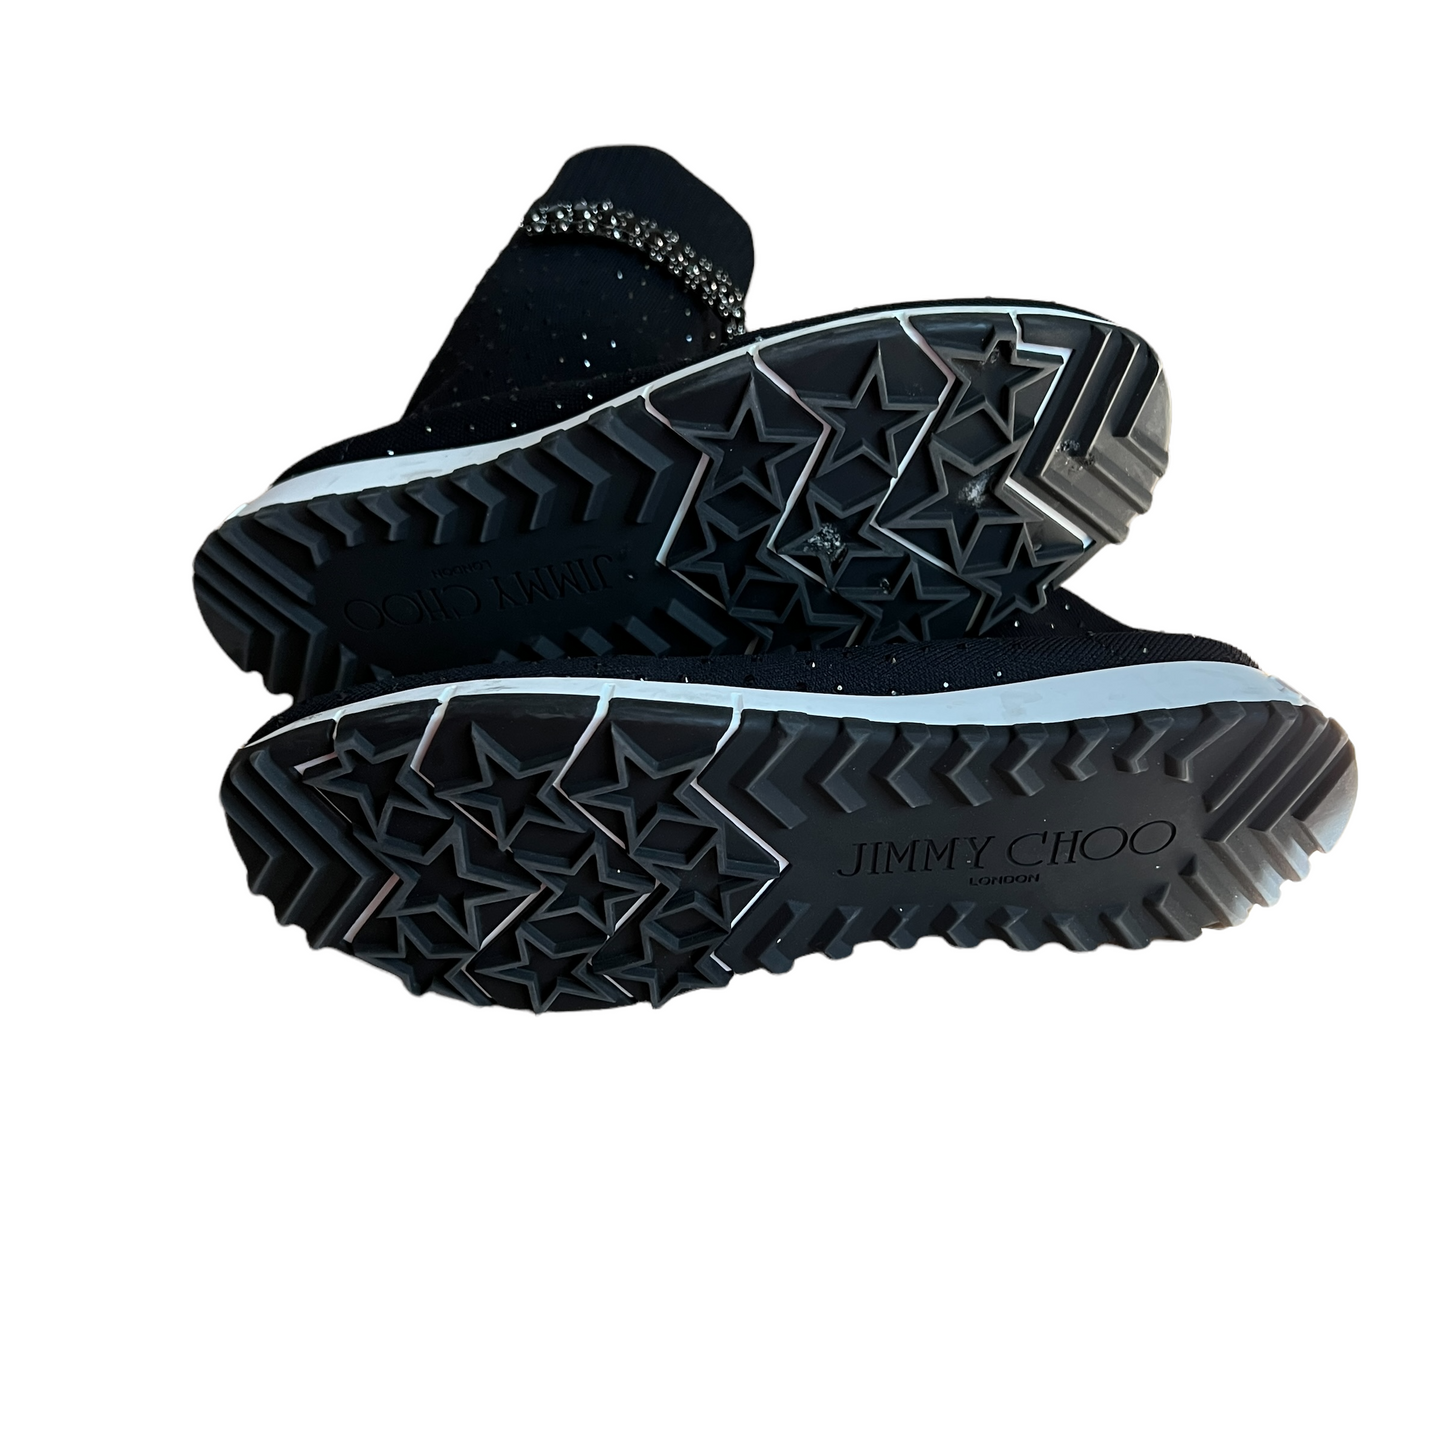 Black Sock Sneakers - 10